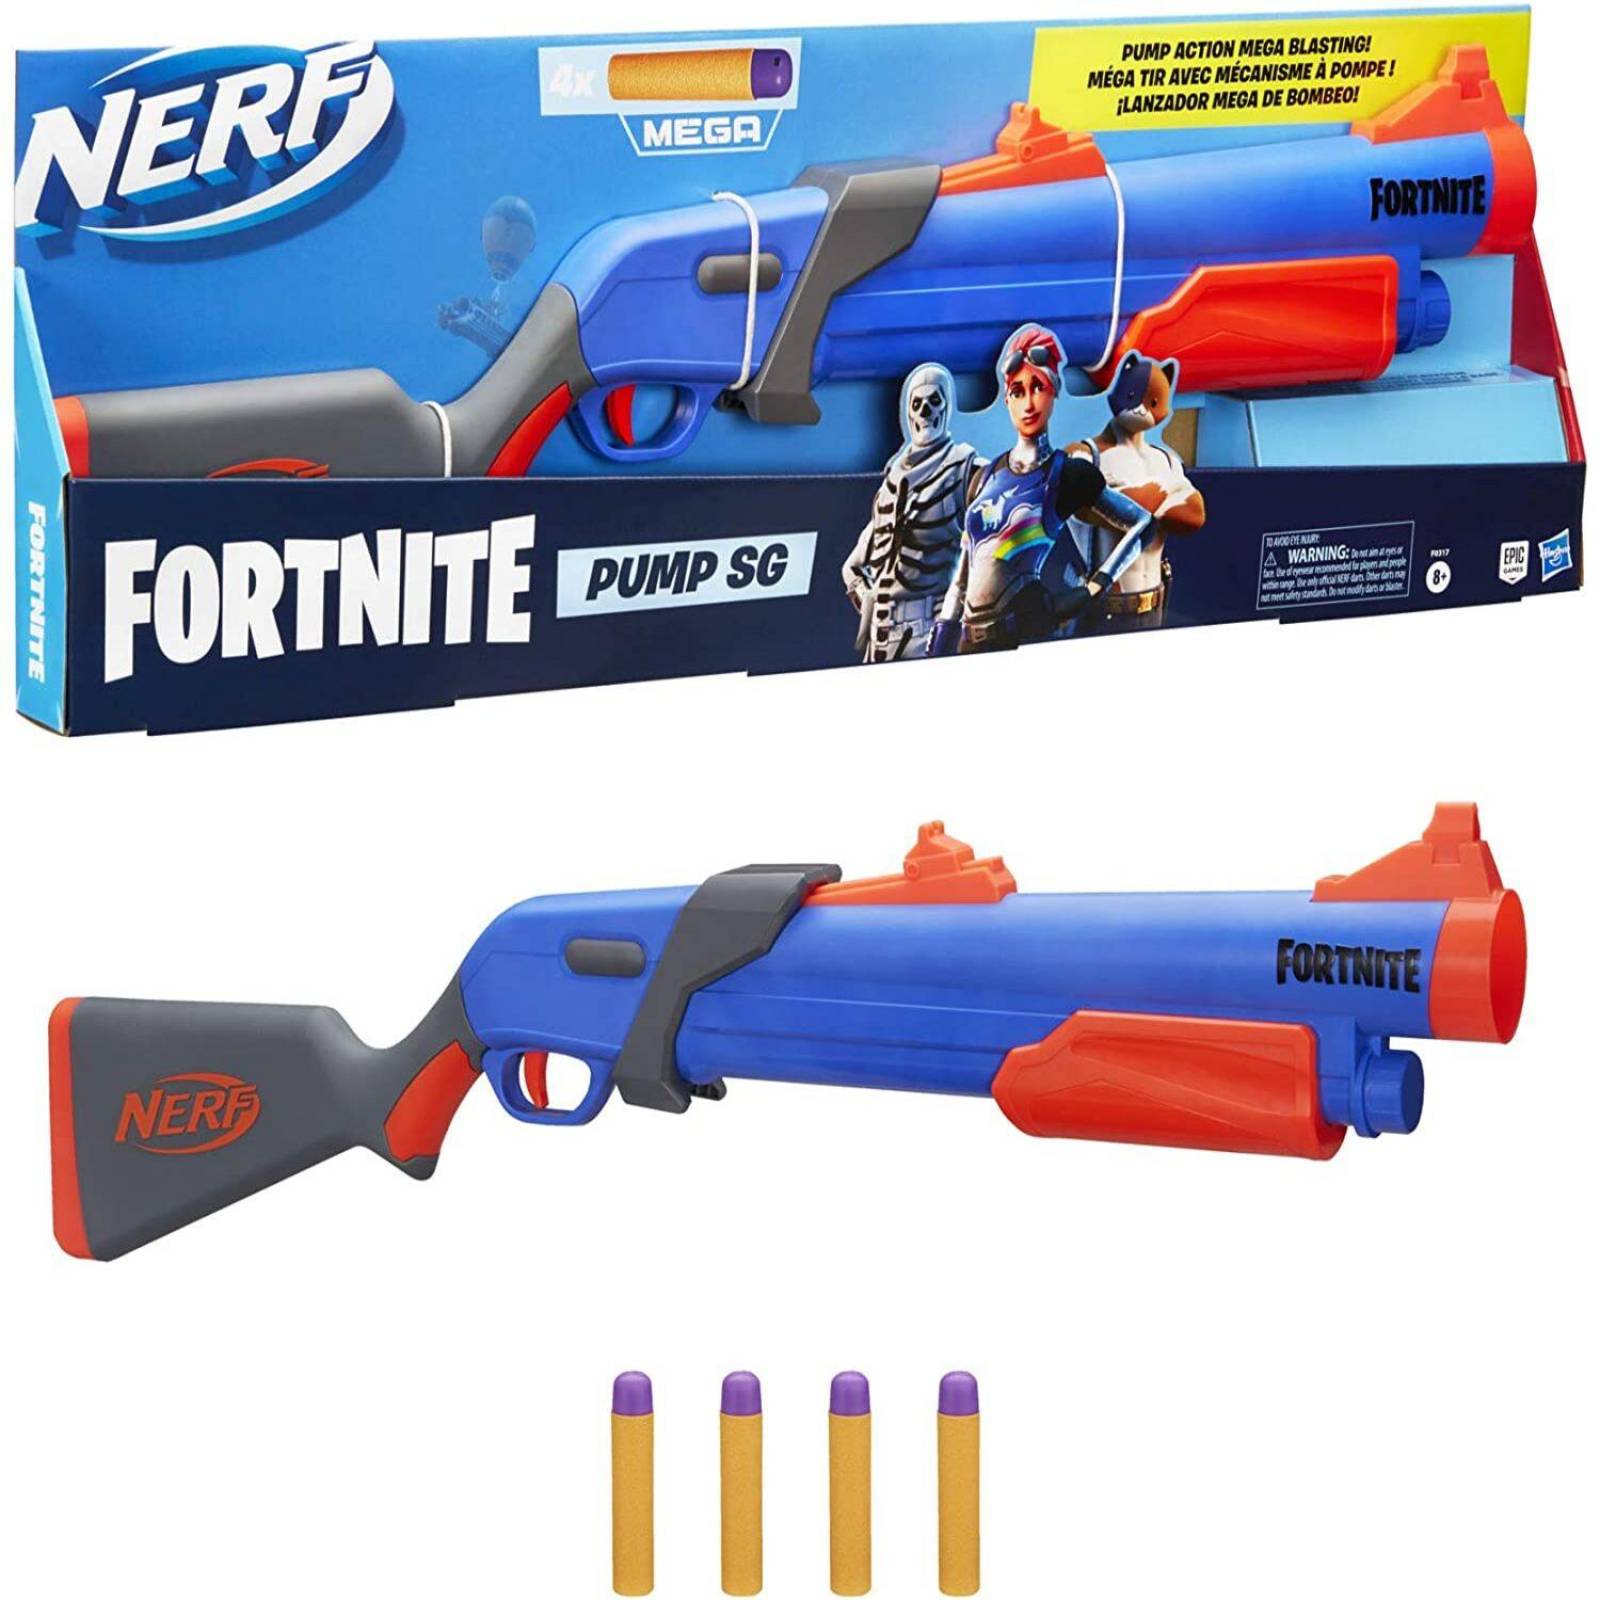 Escopeta de juguete (NERF) – Megapaca